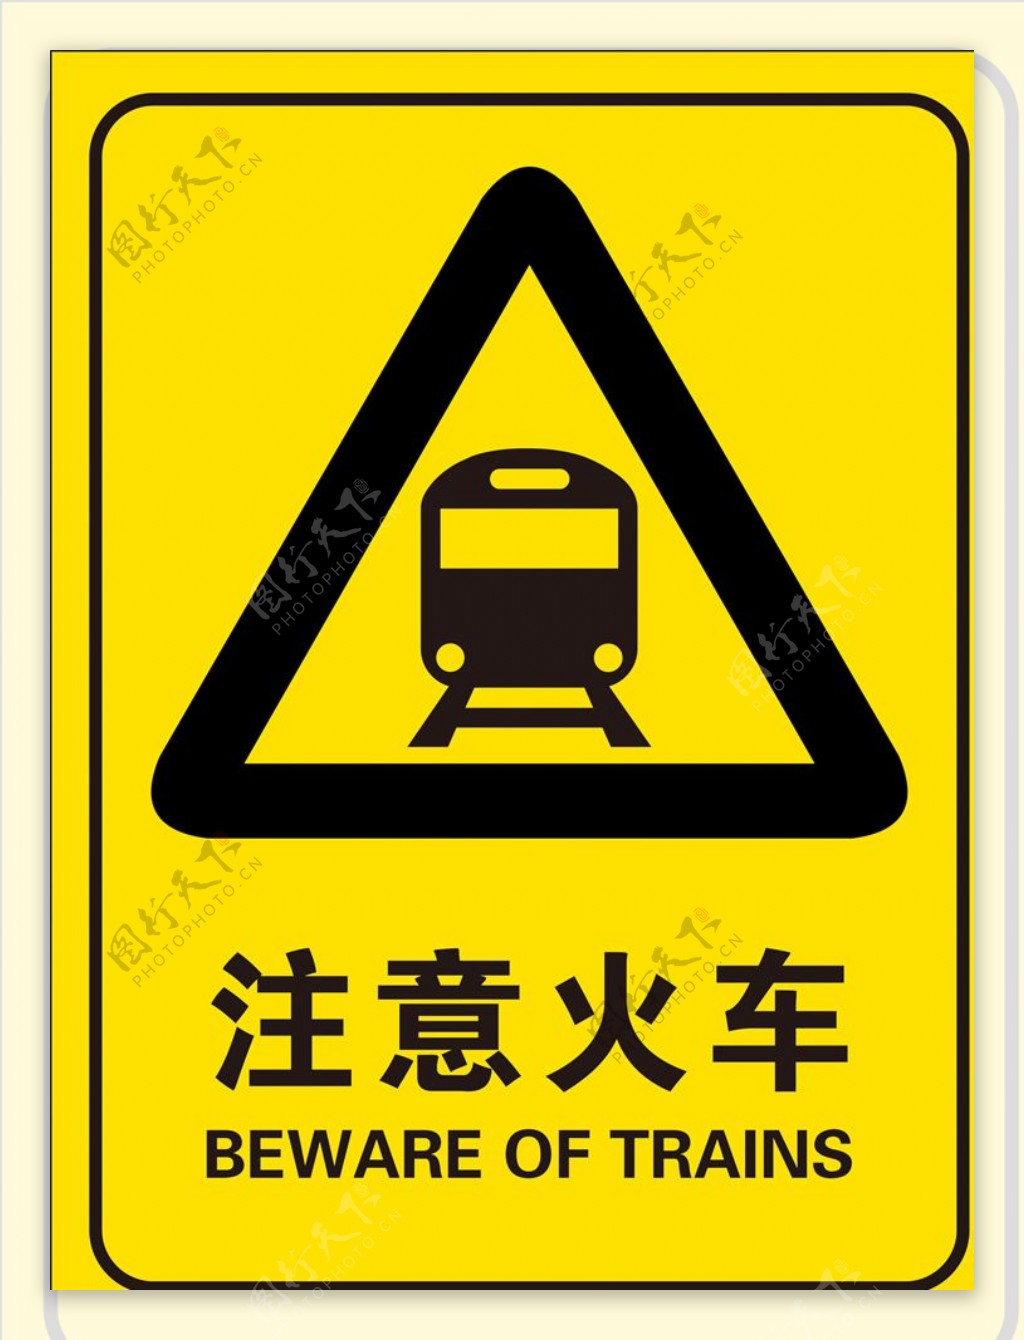 注意火车